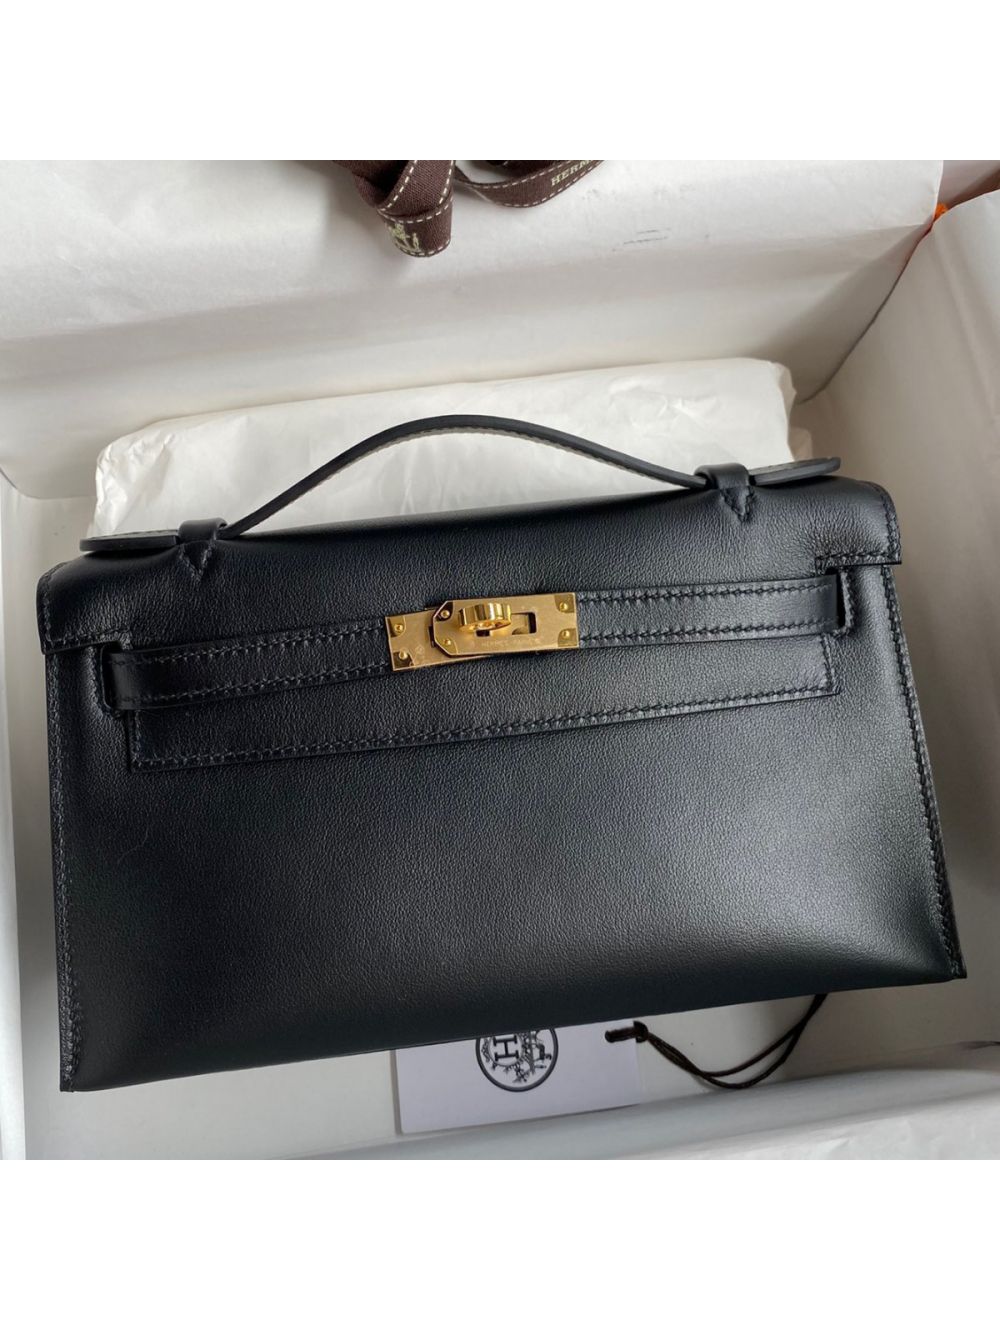 Replica Hermes Kelly Pochette Handmade Bag In Black Swift Calfskin